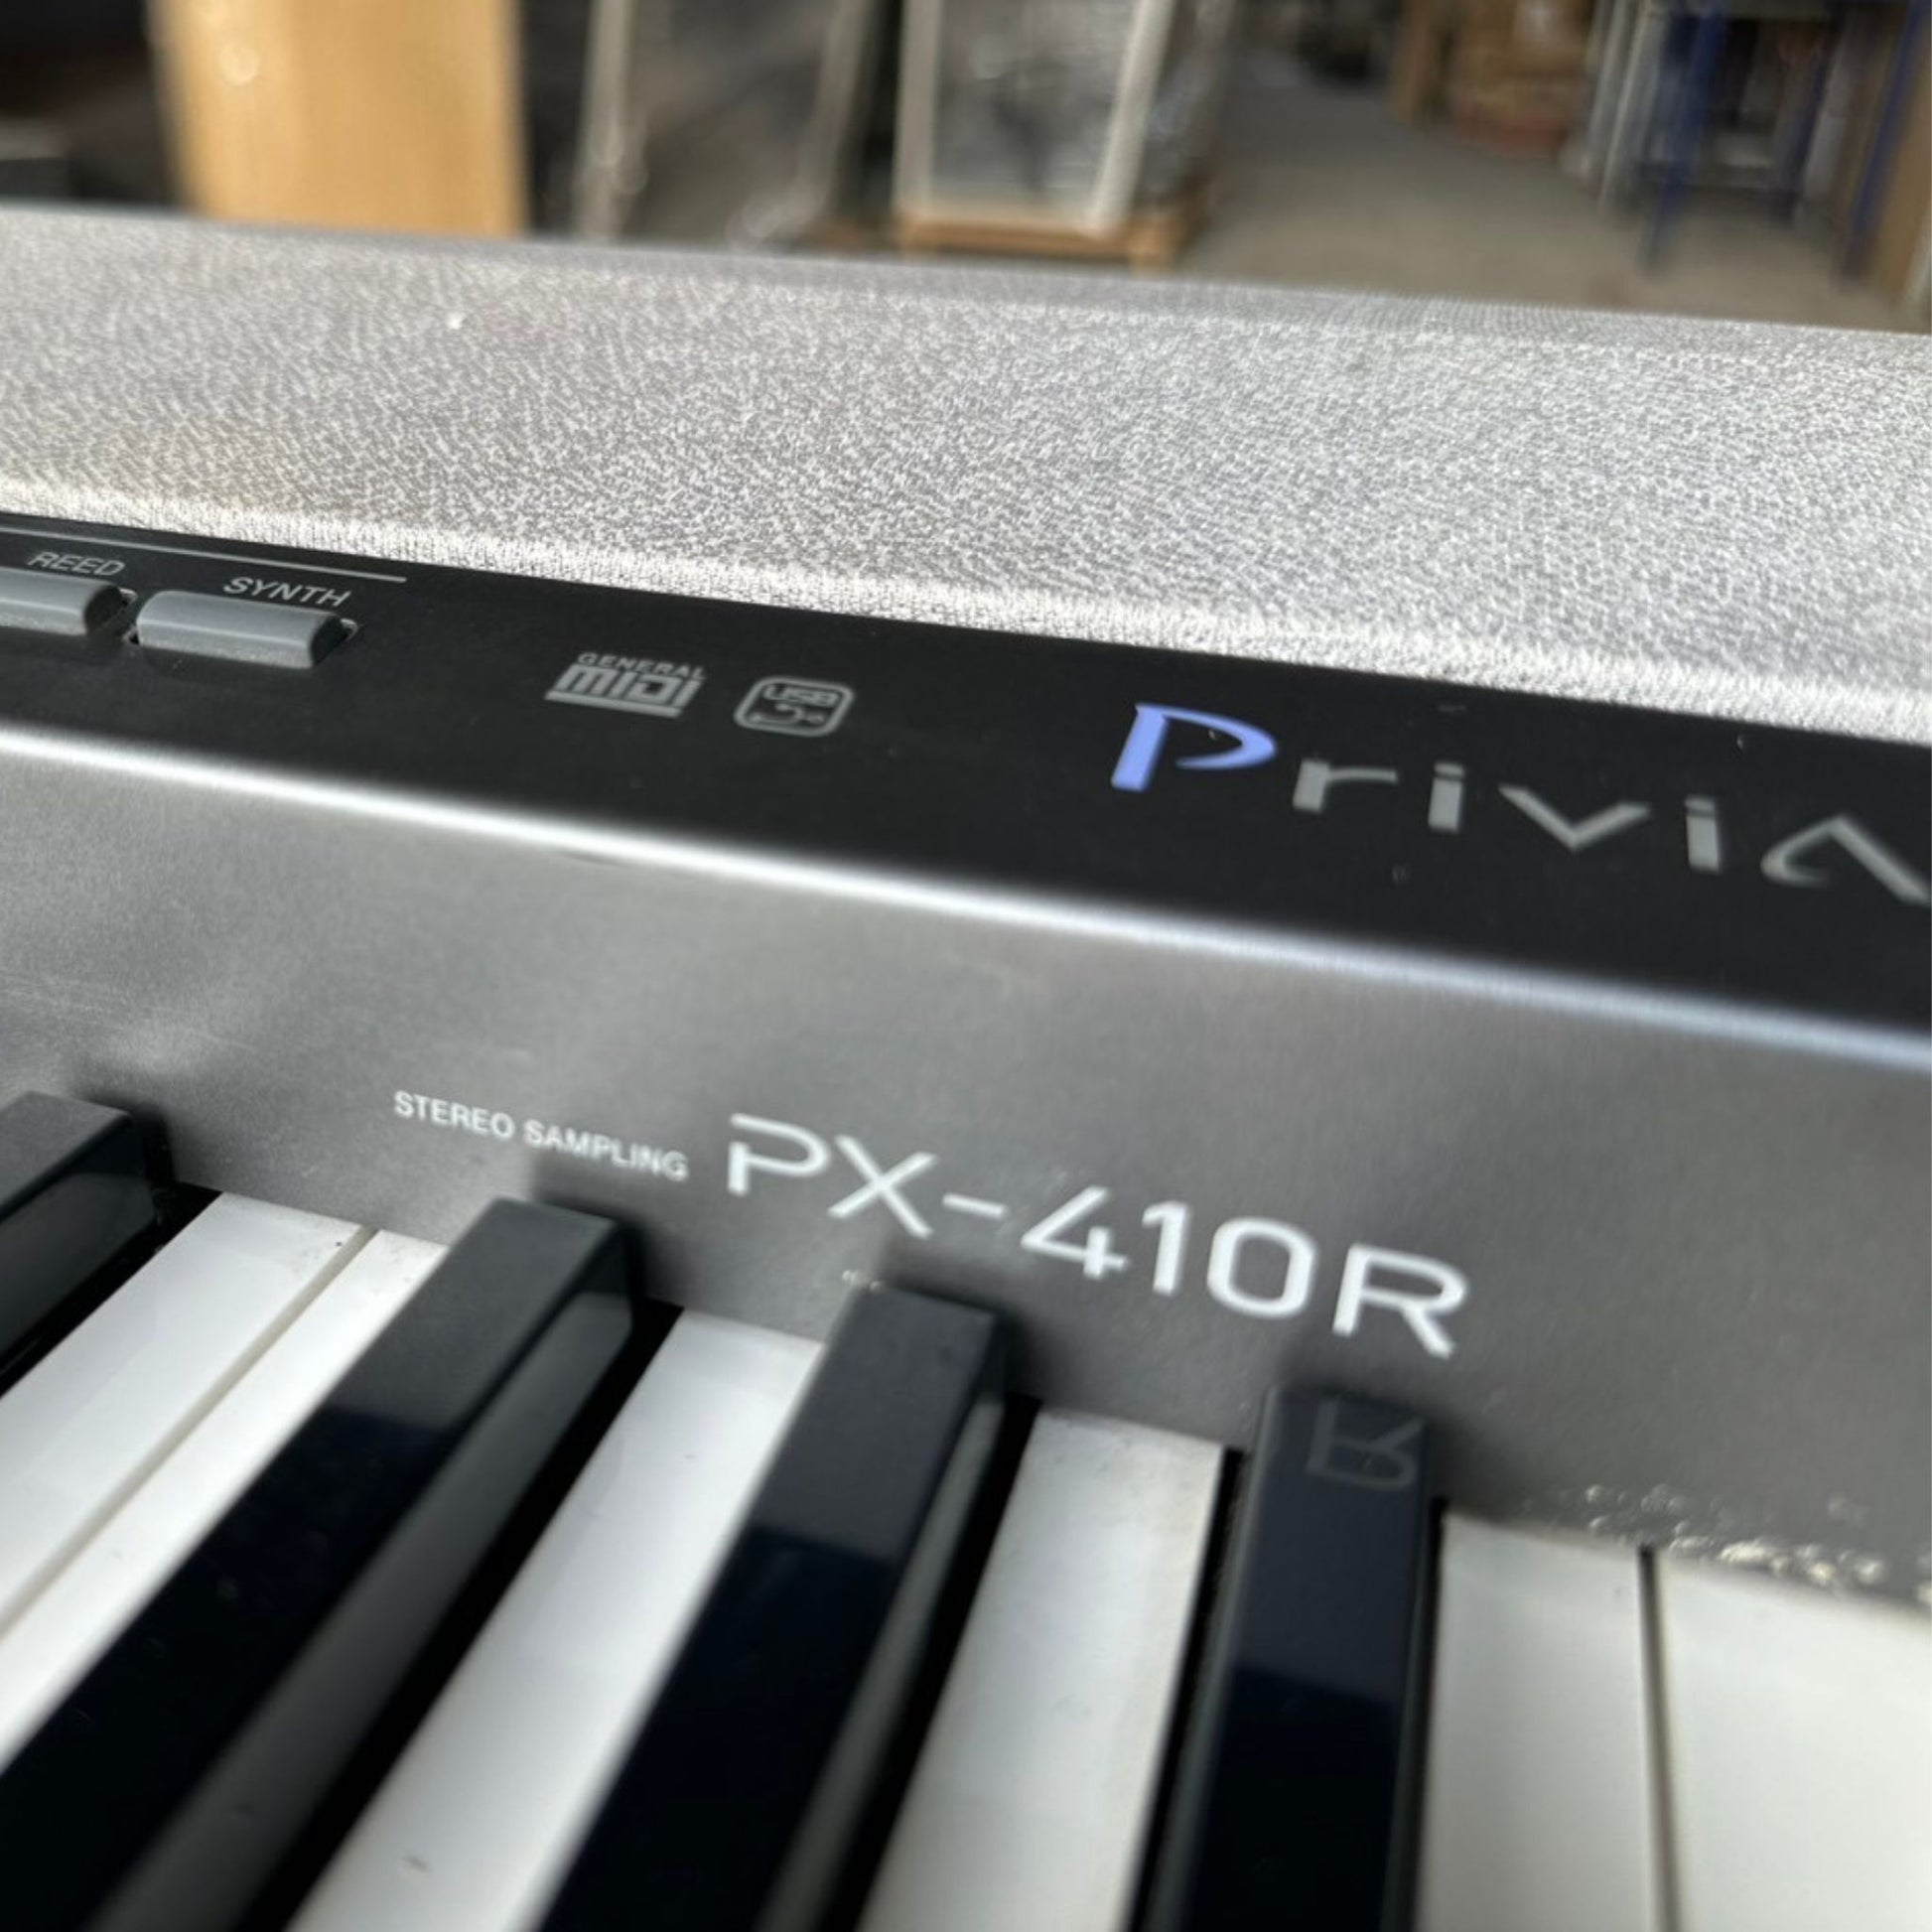 Đàn Piano Điện Casio PX-410R - Qua Sử Dụng - Việt Music